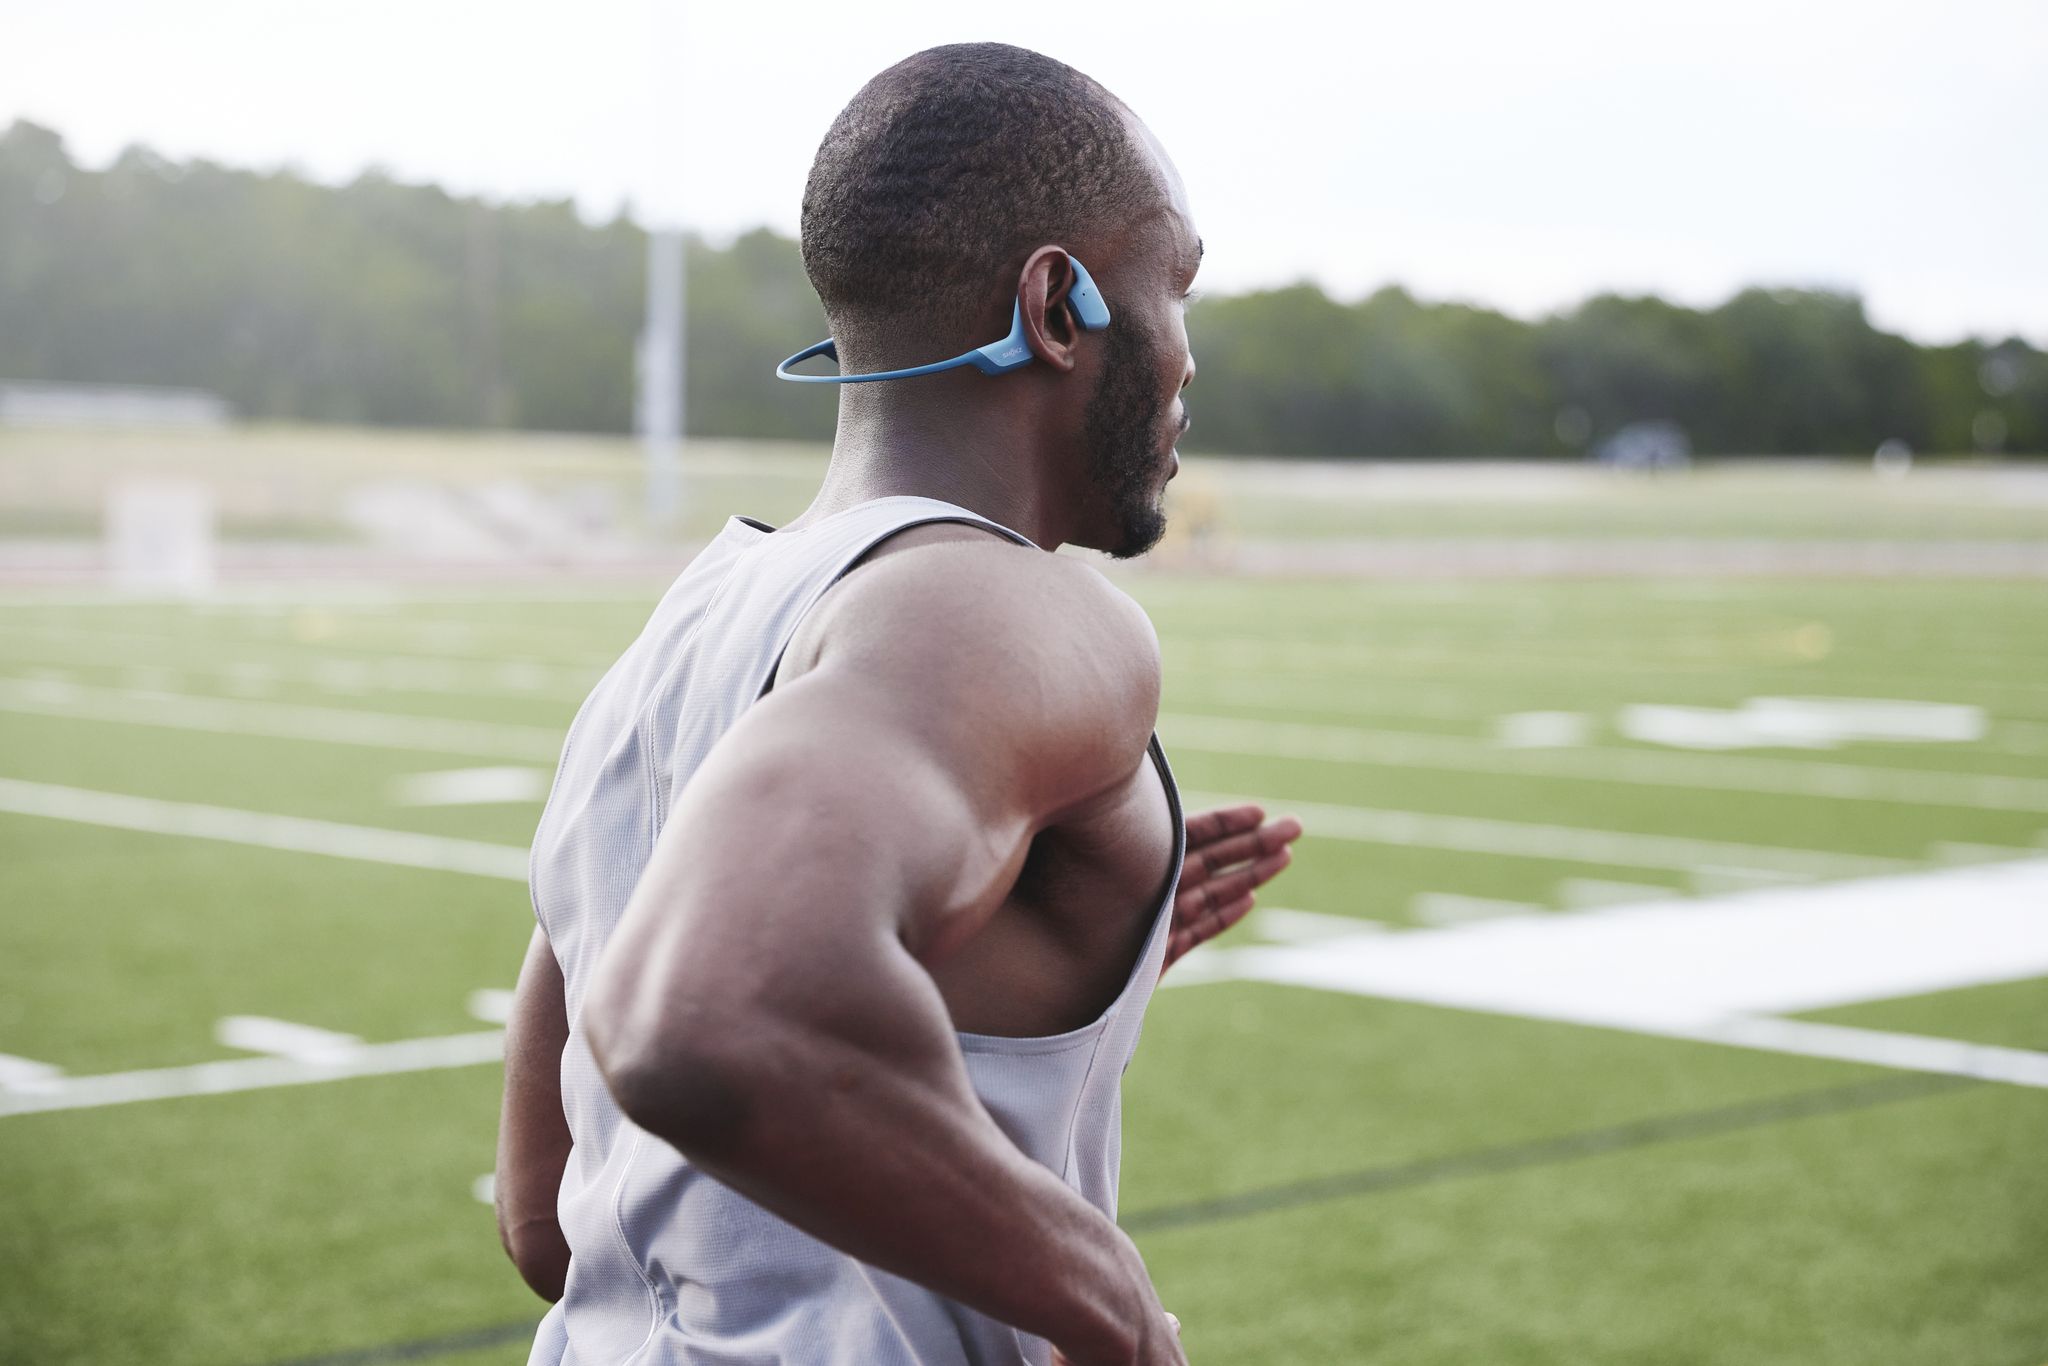 SHOKZ OpenRun Pro - Auriculares deportivos Bluetooth de conducción ósea de  oreja abierta, resistentes al sudor, para entrenamientos y correr, con base